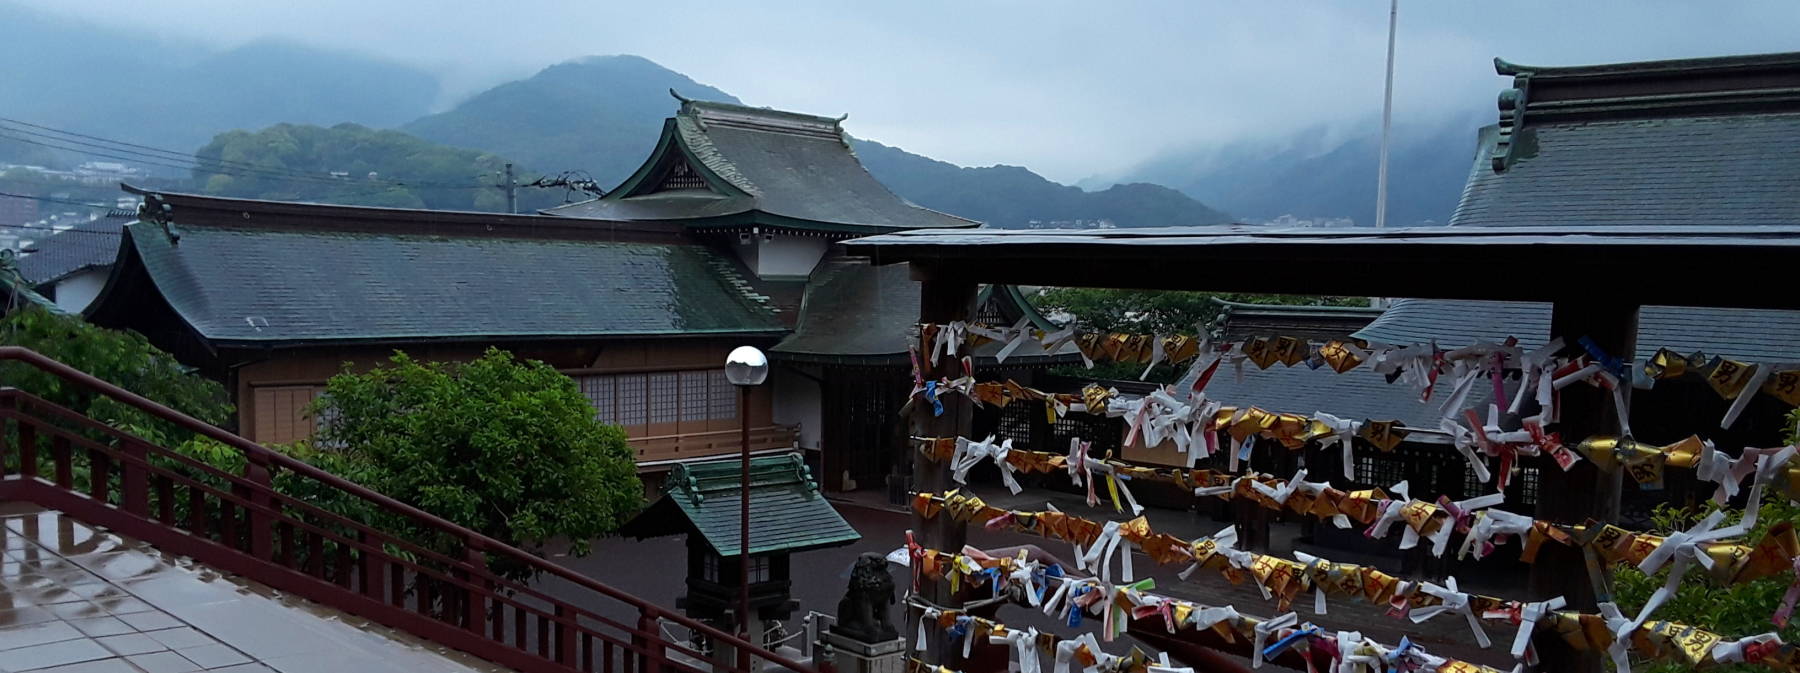 Suwa Jinja Shintō shrine in Nagasaki.